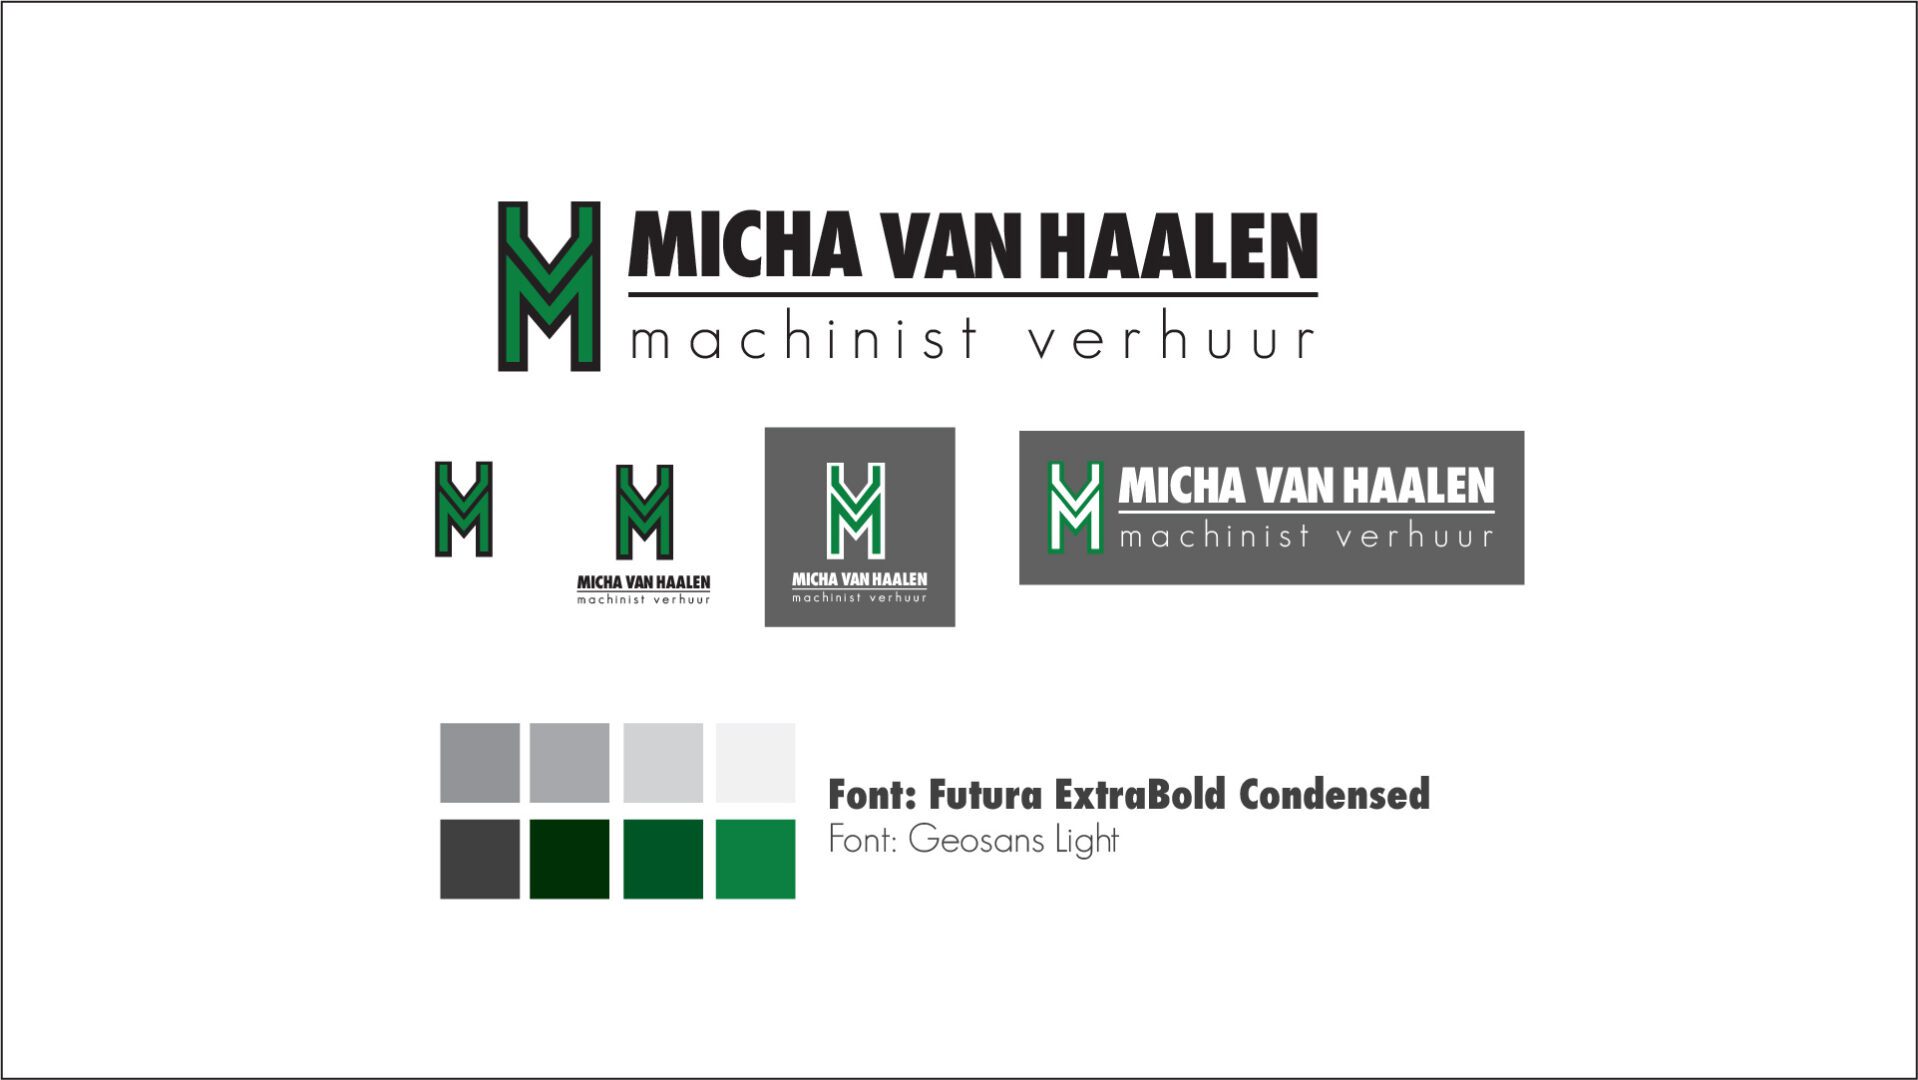 Micha van Haalen logo